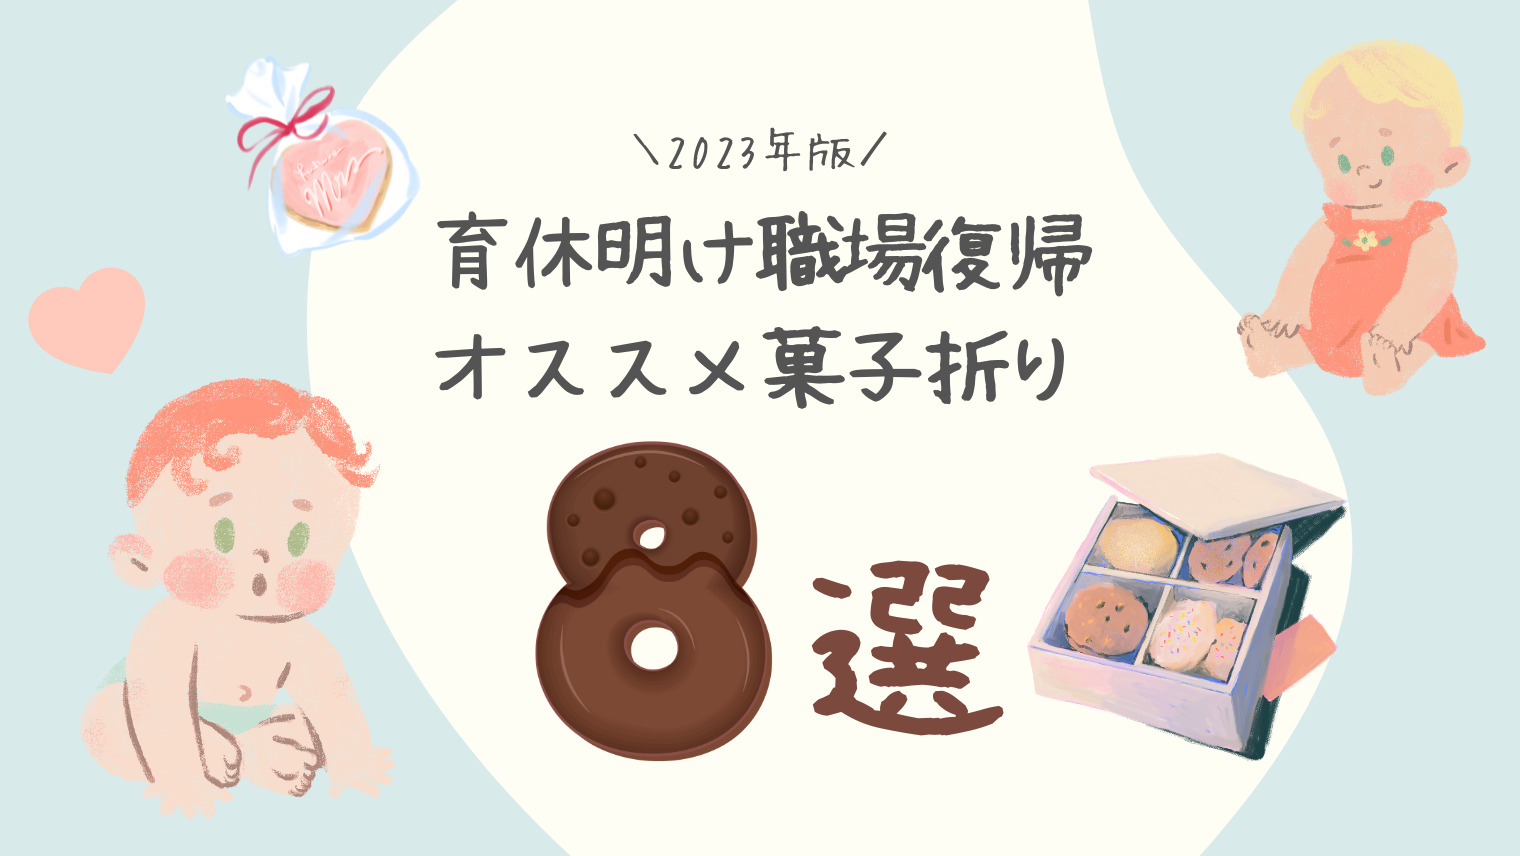 【2023年最新版】育休明けに職場に配るお菓子ランキングTOP8